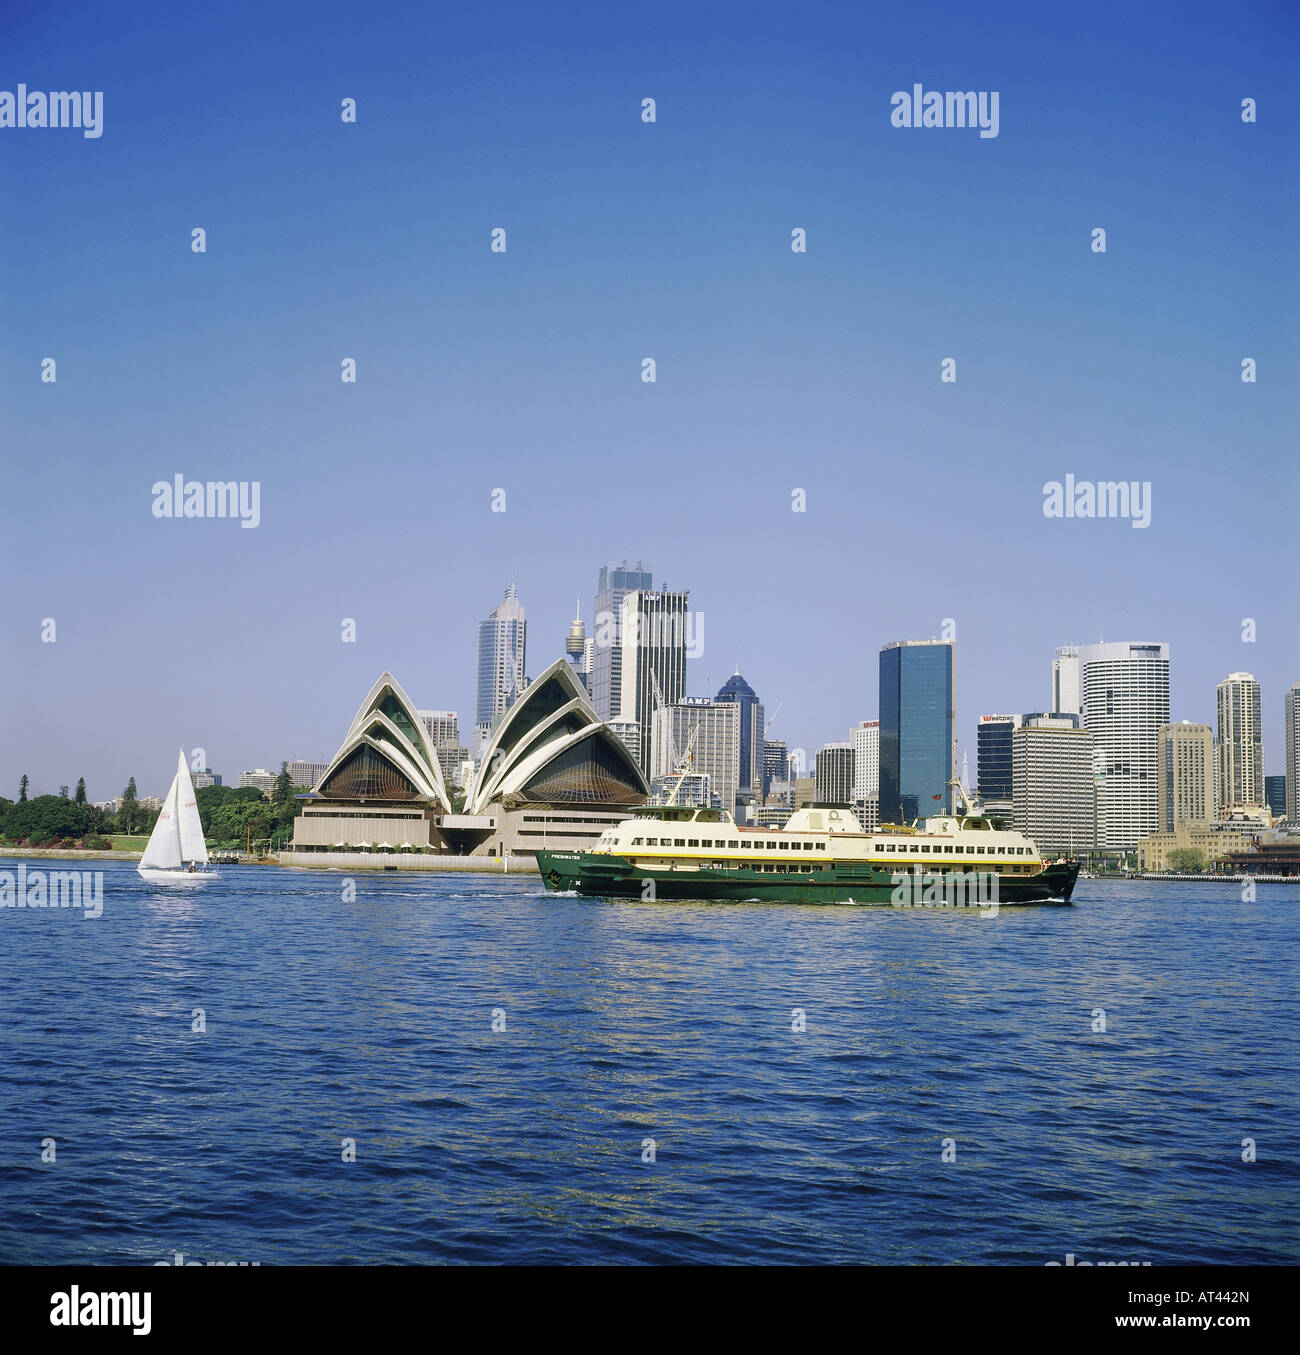 Geographie/Reise, Australien, New South Wales, Sydney, Blick auf die Stadt, Blick auf das Stadtbild von Kirrbilli, Oper und Innenstadt, Schiff, Skyline, Wolkenkratzer, Dampfschiff, Segelboot, Stockfoto